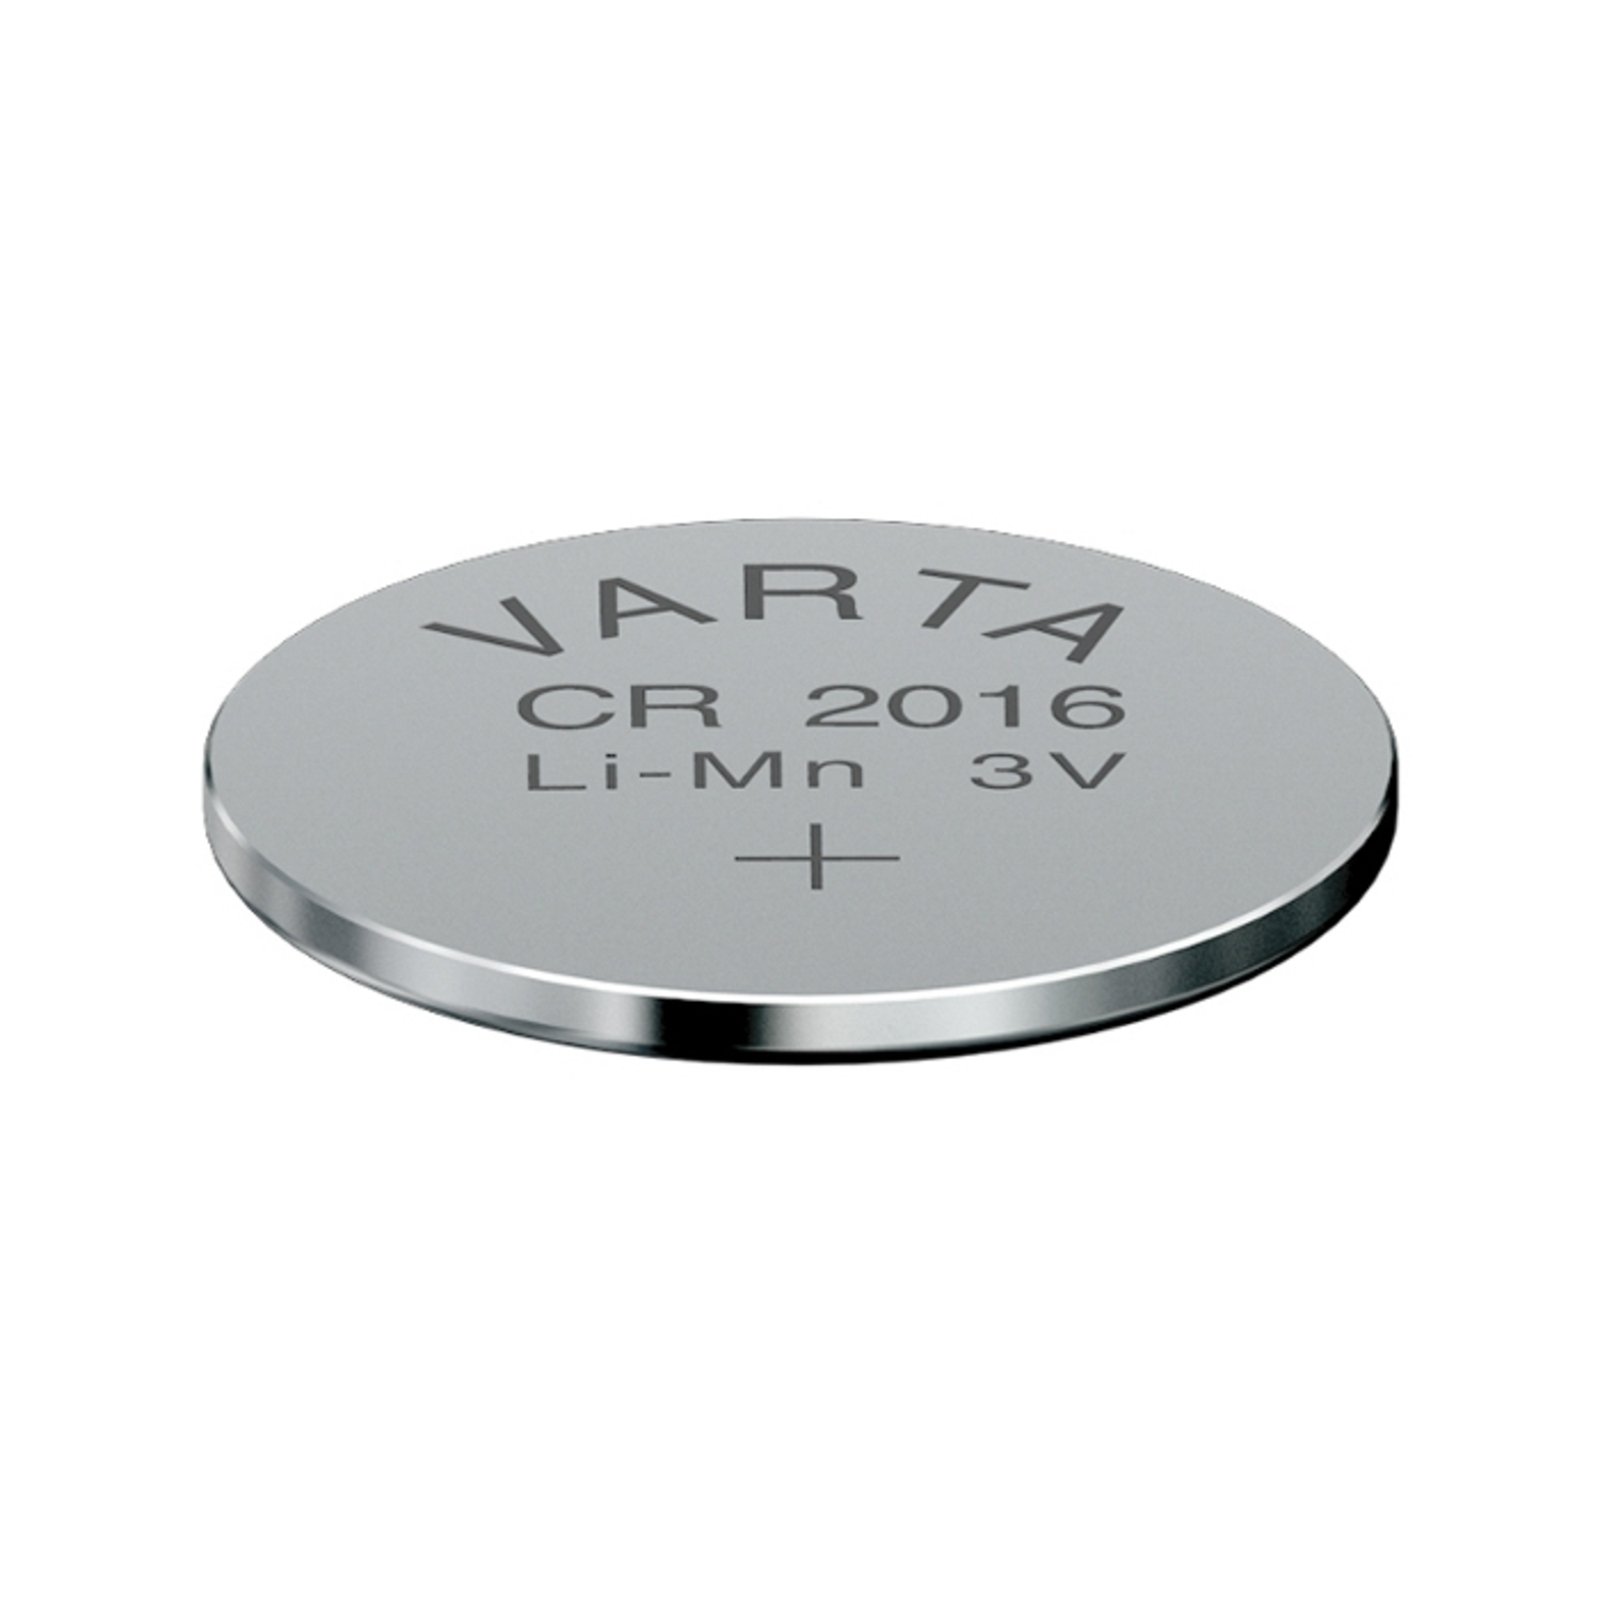 Lithium CR2016 3V knoopcel van VARTA